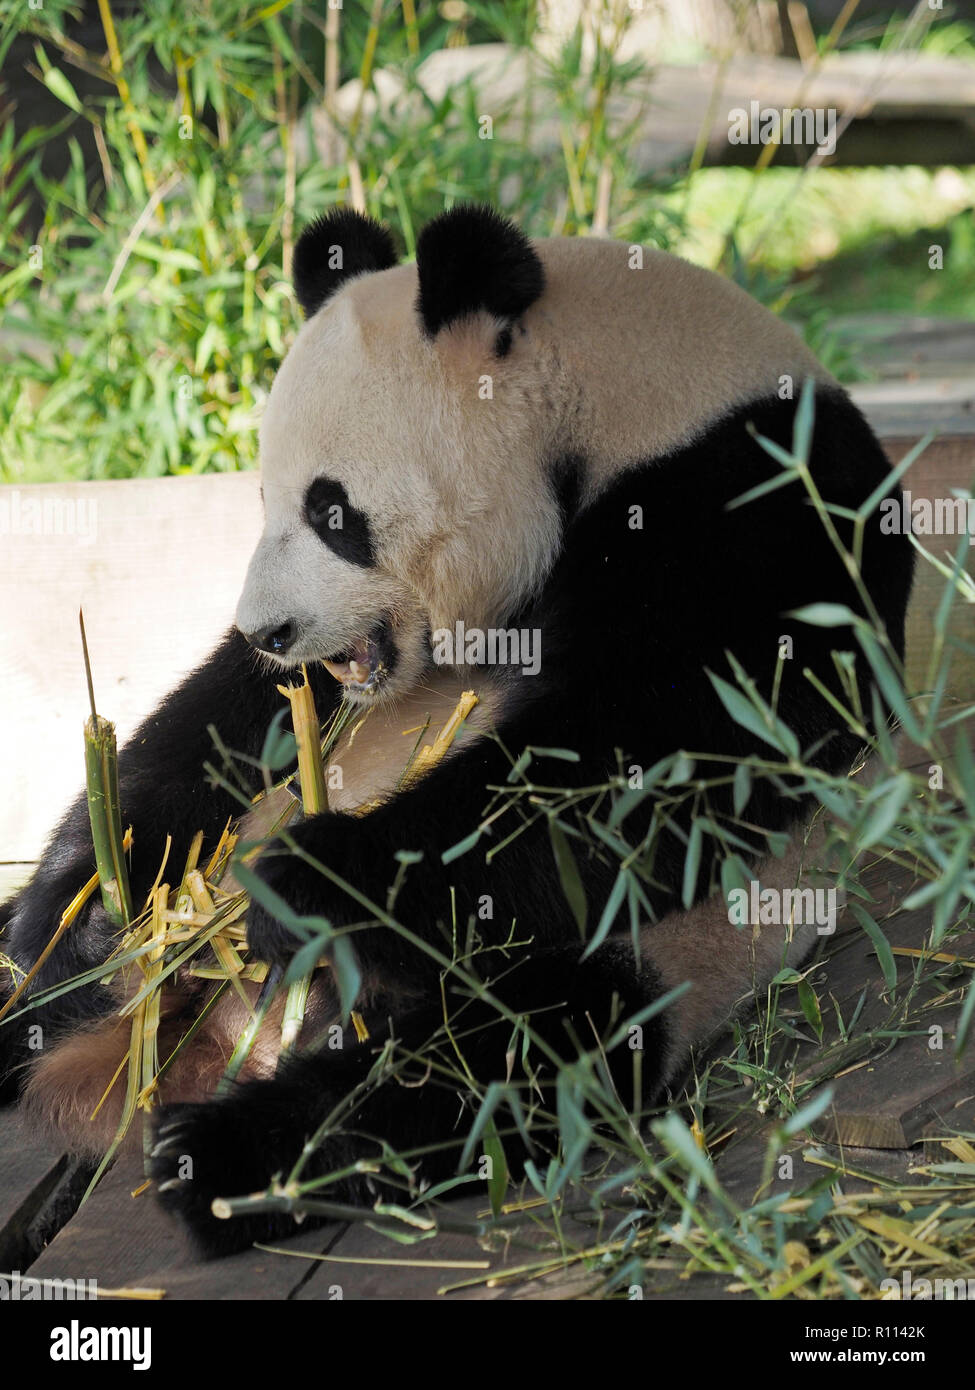 Ours panda géant assis en mangeant du bambou, du zoo de RHENEN, aux Pays-Bas. Ours Panda sont très rares dans les zoos en dehors de la Chine, en raison de leur régime spécial. Banque D'Images